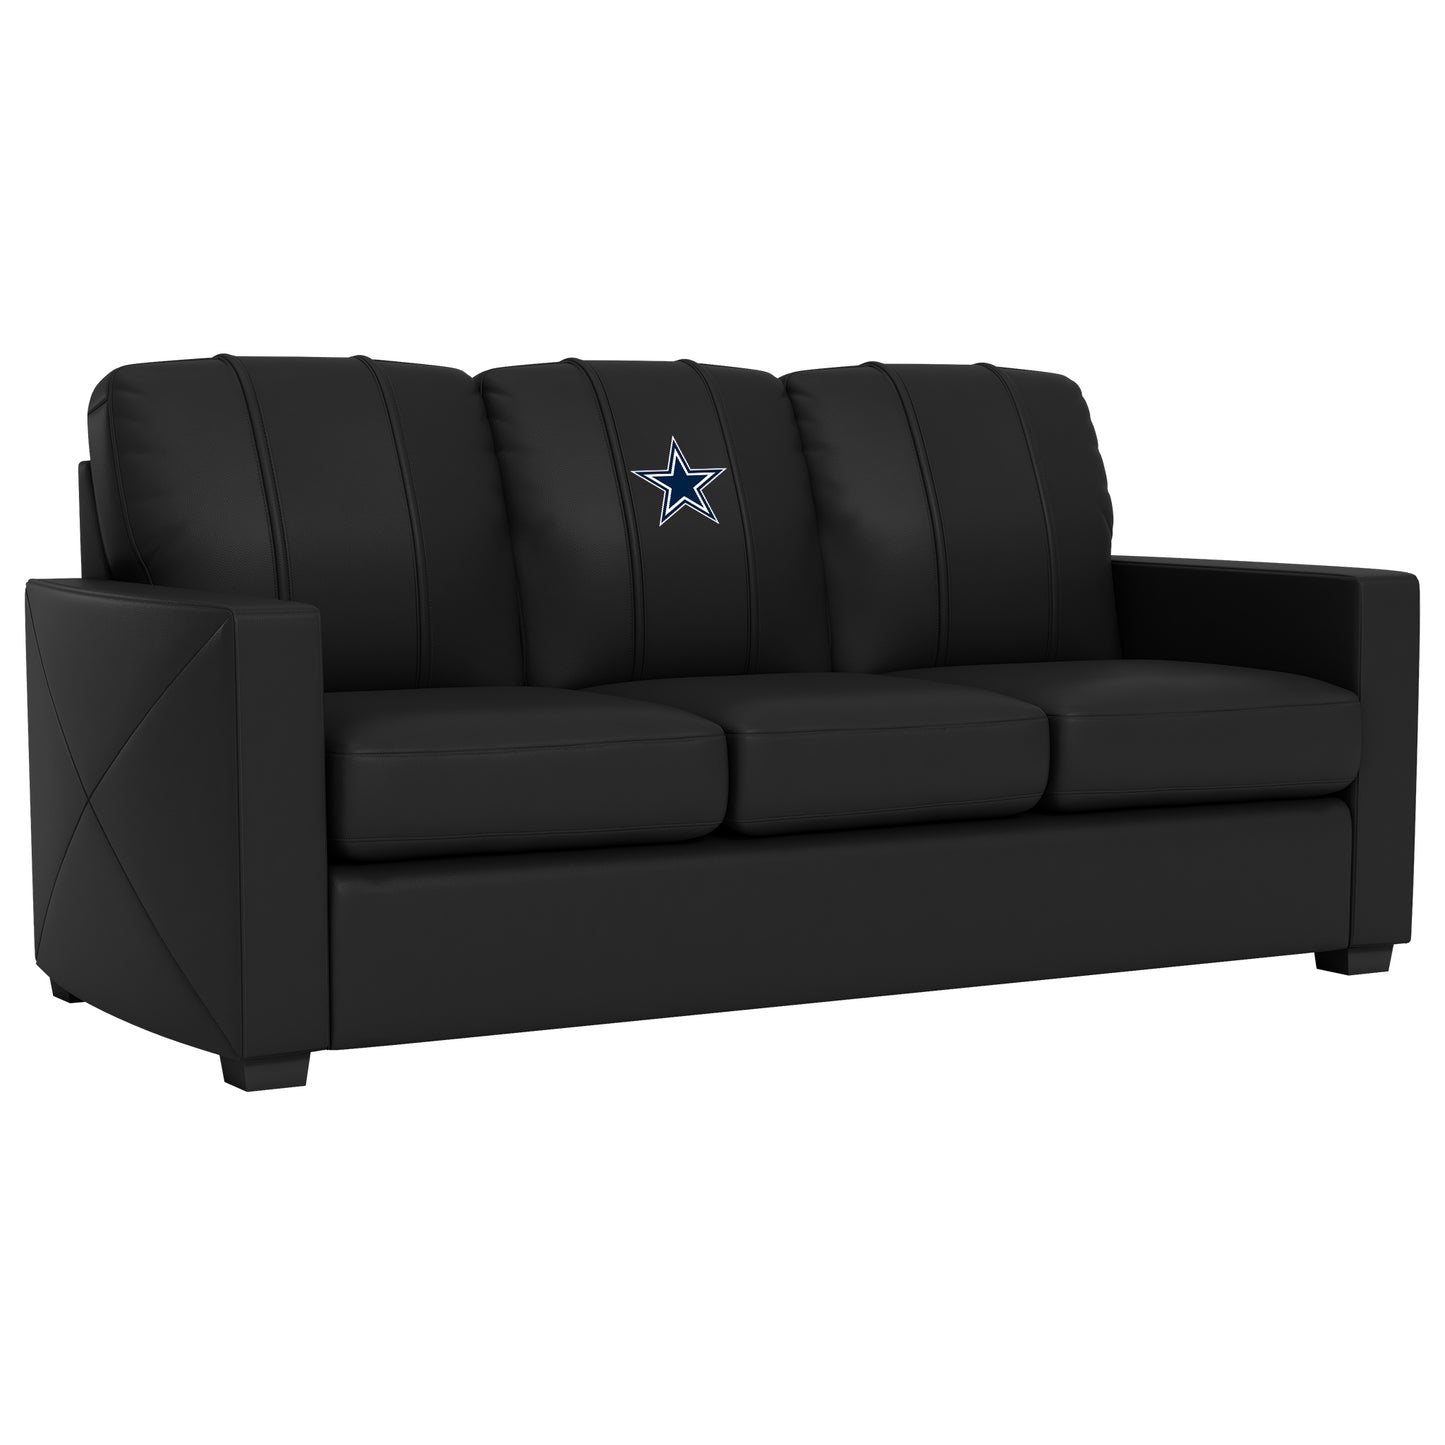 Silver Sofa with  Dallas Cowboys Primary Logo